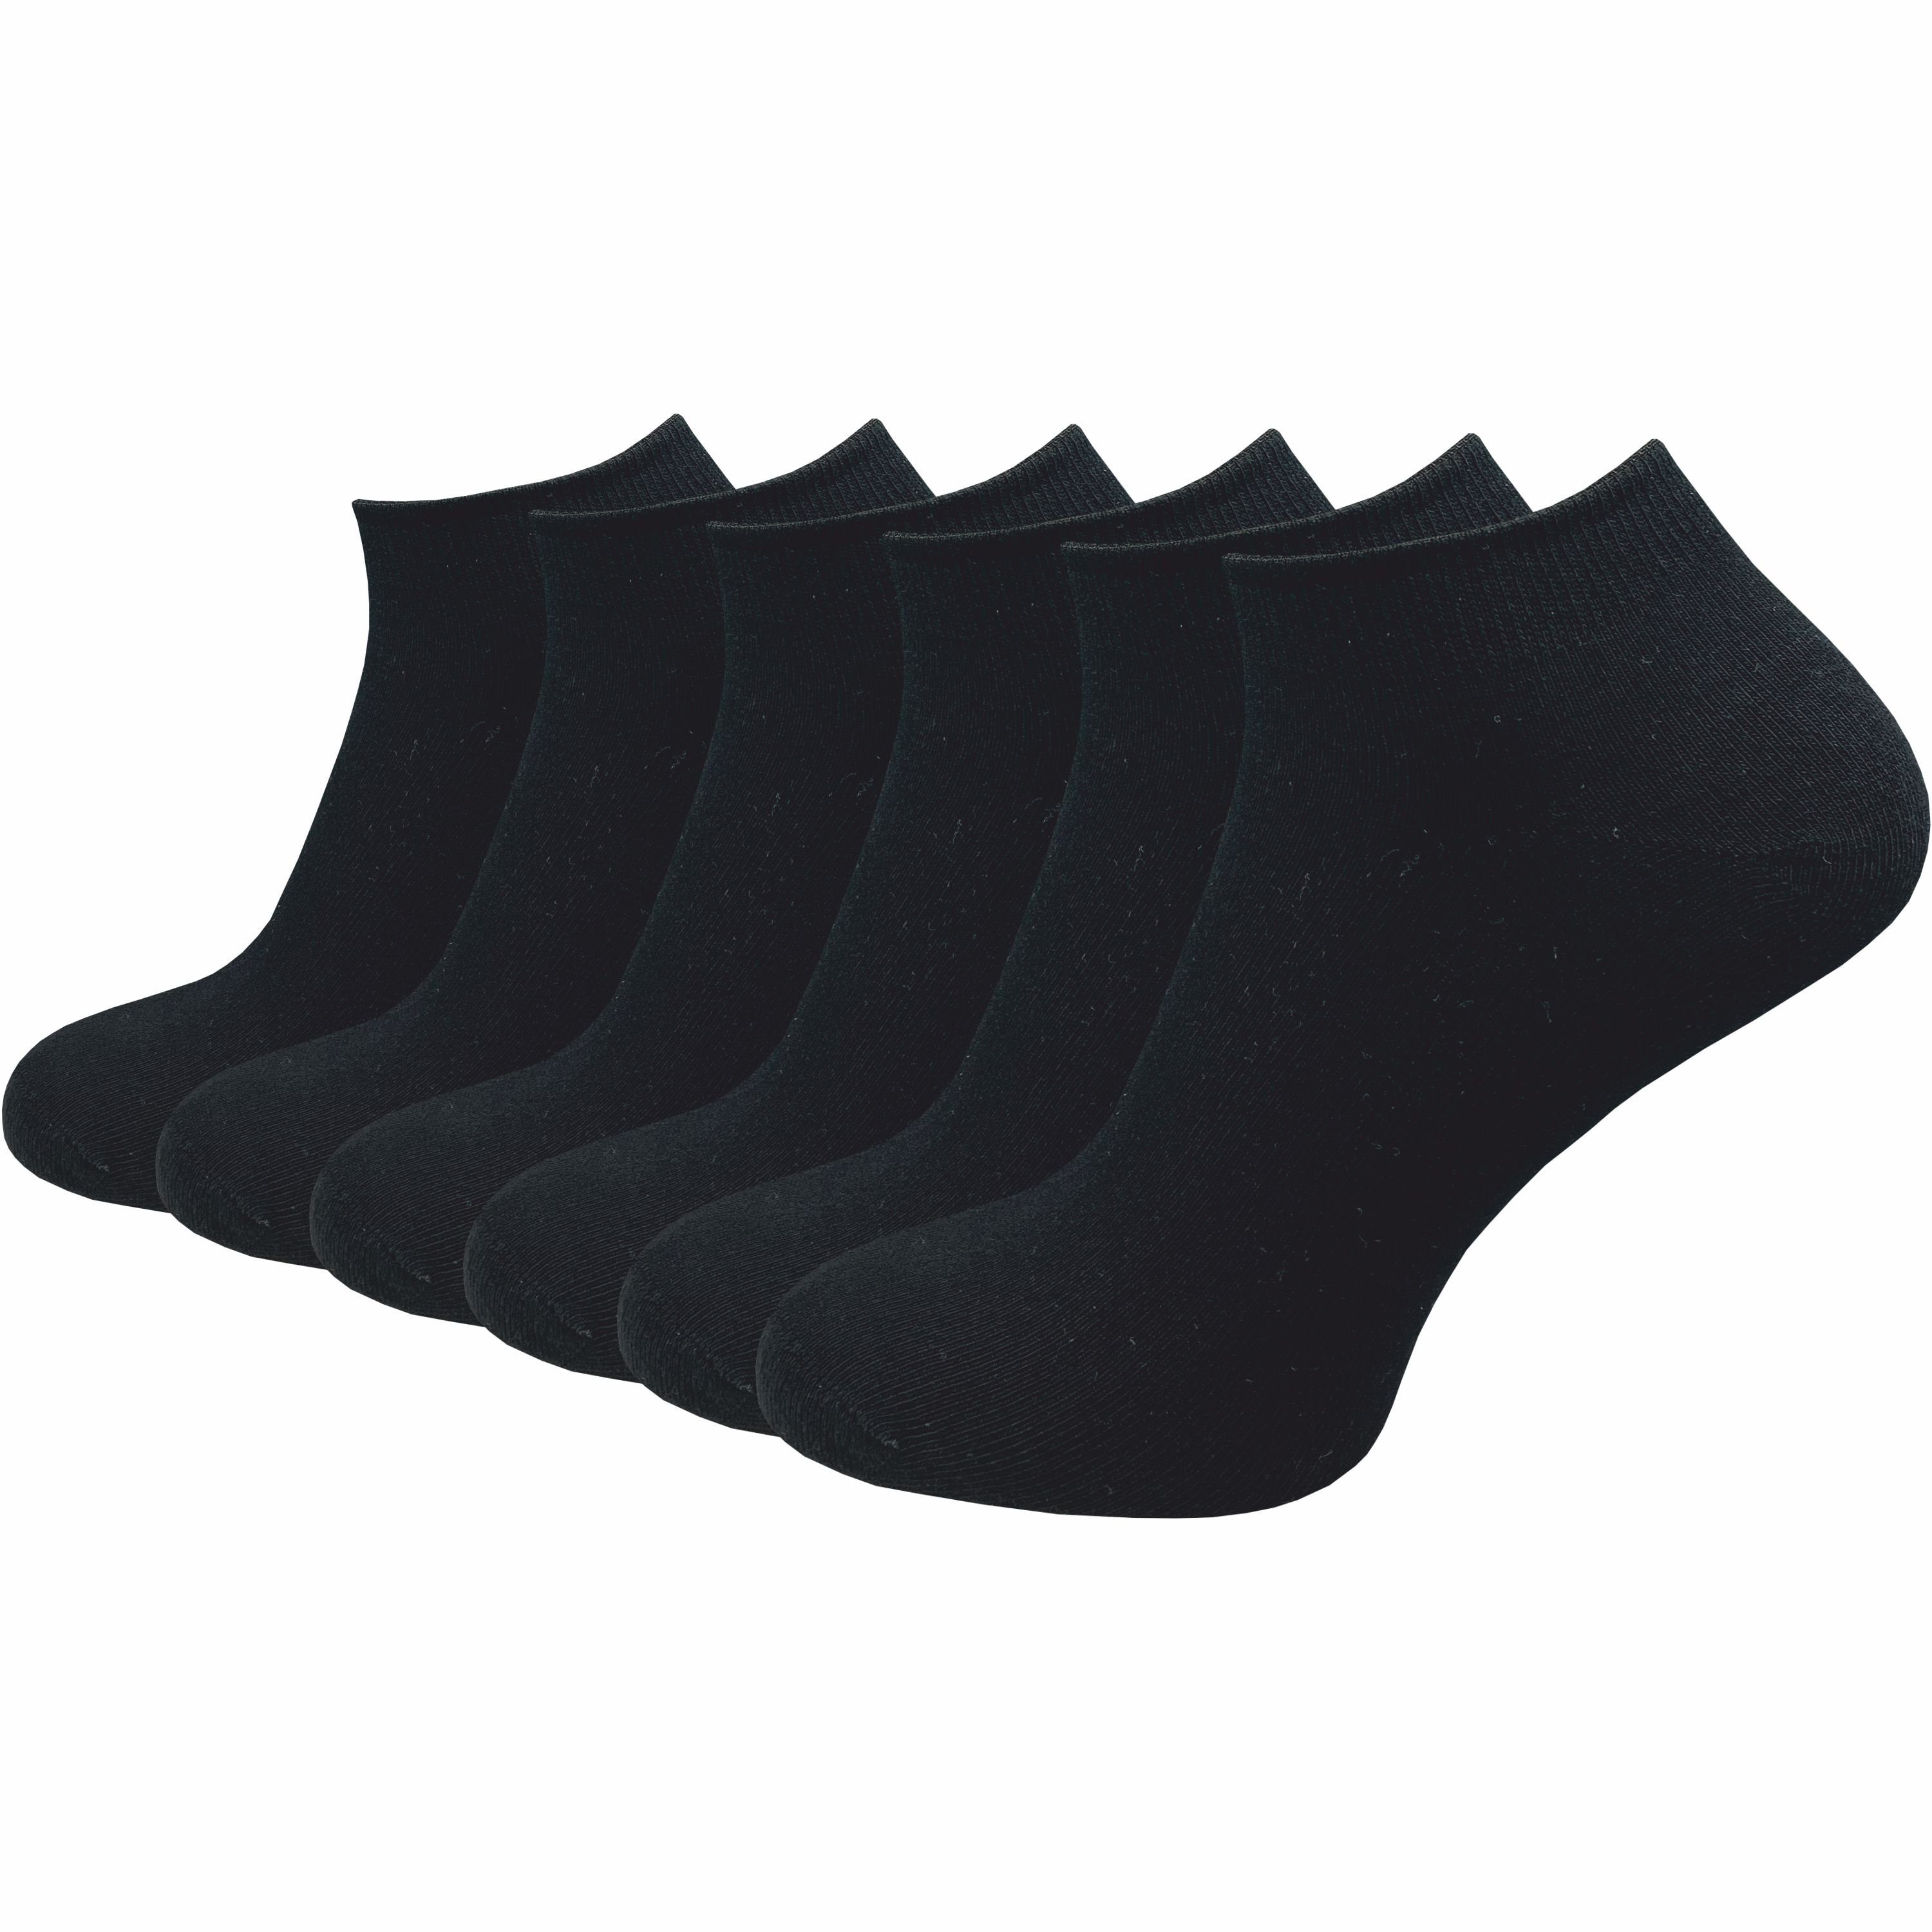 GAWILO Sneakersocken für Damen & Herren in schwarz & weiß - Kurzsocke ohne drückende Naht (6 Paar) Kein Verrutschen dank Komfortbund - Ideal zum Tragen von Turnschuhen